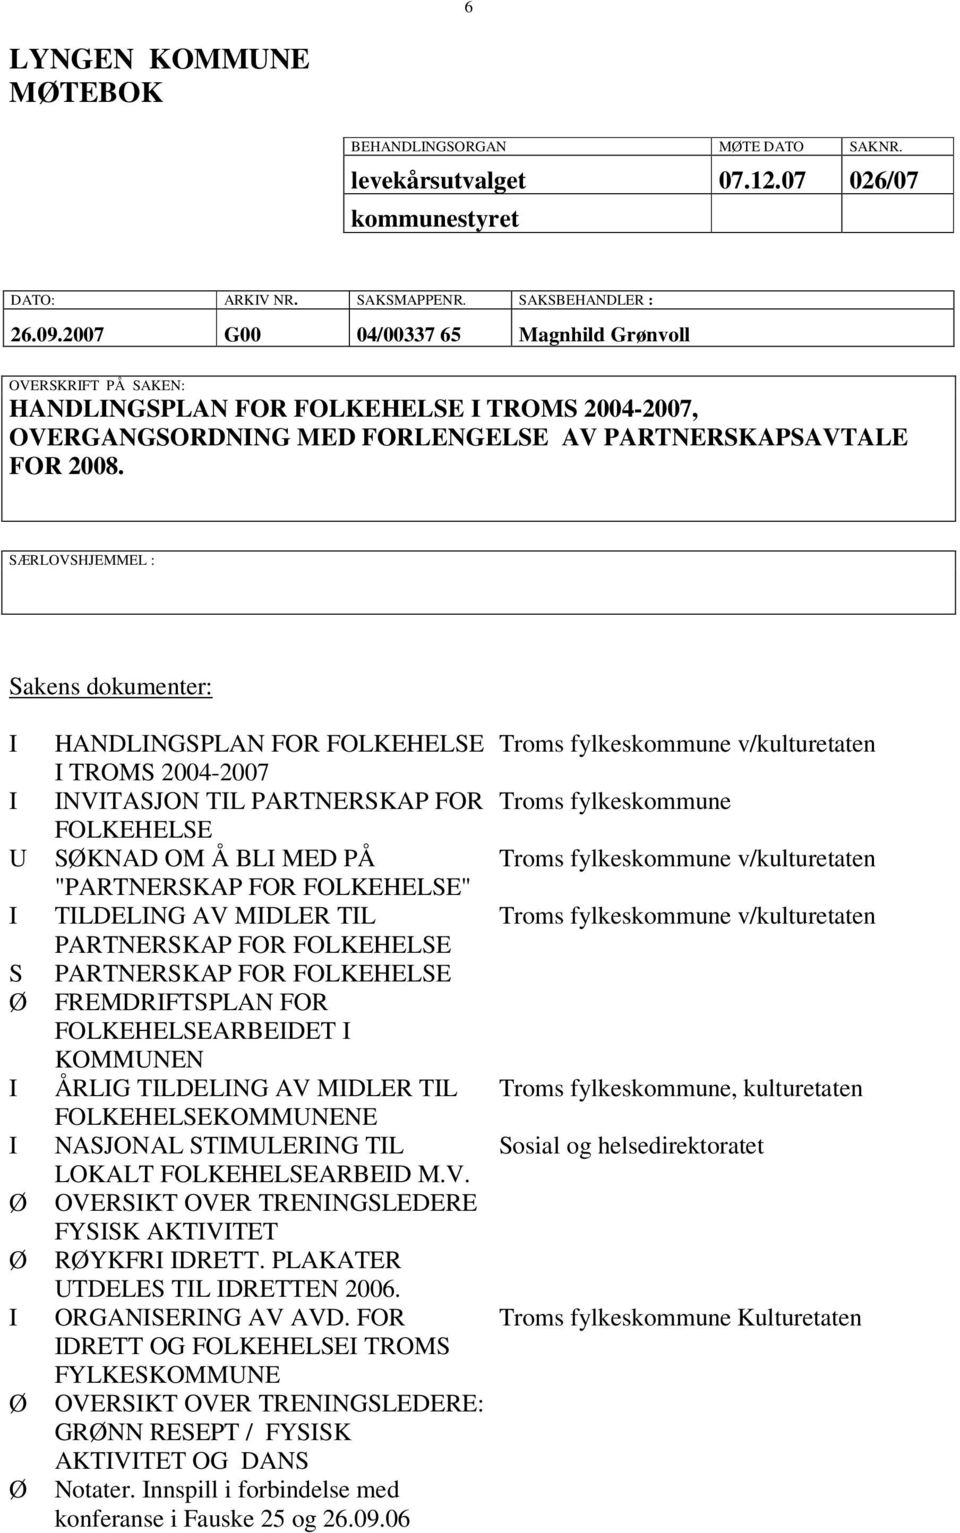 SÆRLOVSHJEMMEL : Sakens dokumenter: U S Ø Ø Ø Ø Ø HANDLNGSPLAN FOR FOLKEHELSE TROMS 2004-2007 NVTASJON TL PARTNERSKAP FOR FOLKEHELSE SØKNAD OM Å BL MED PÅ "PARTNERSKAP FOR FOLKEHELSE" TLDELNG AV